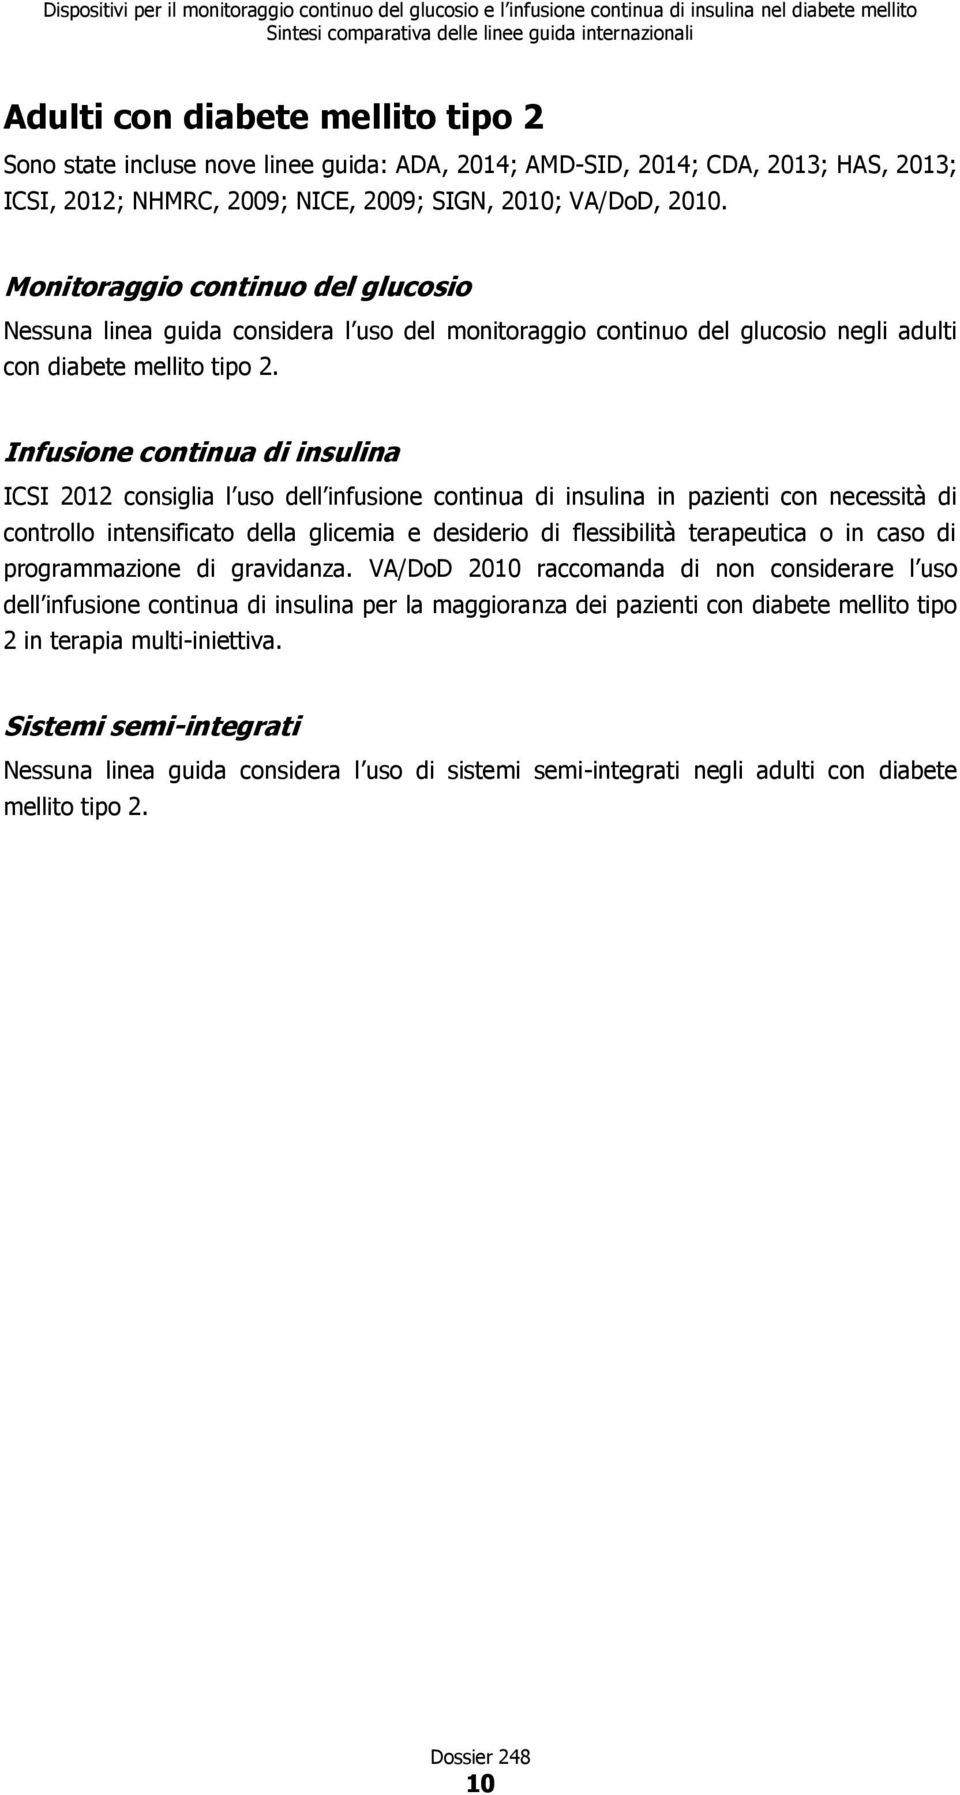 Infusione continua di insulina ICSI 2012 consiglia l uso dell infusione continua di insulina in pazienti con necessità di controllo intensificato della glicemia e desiderio di flessibilità